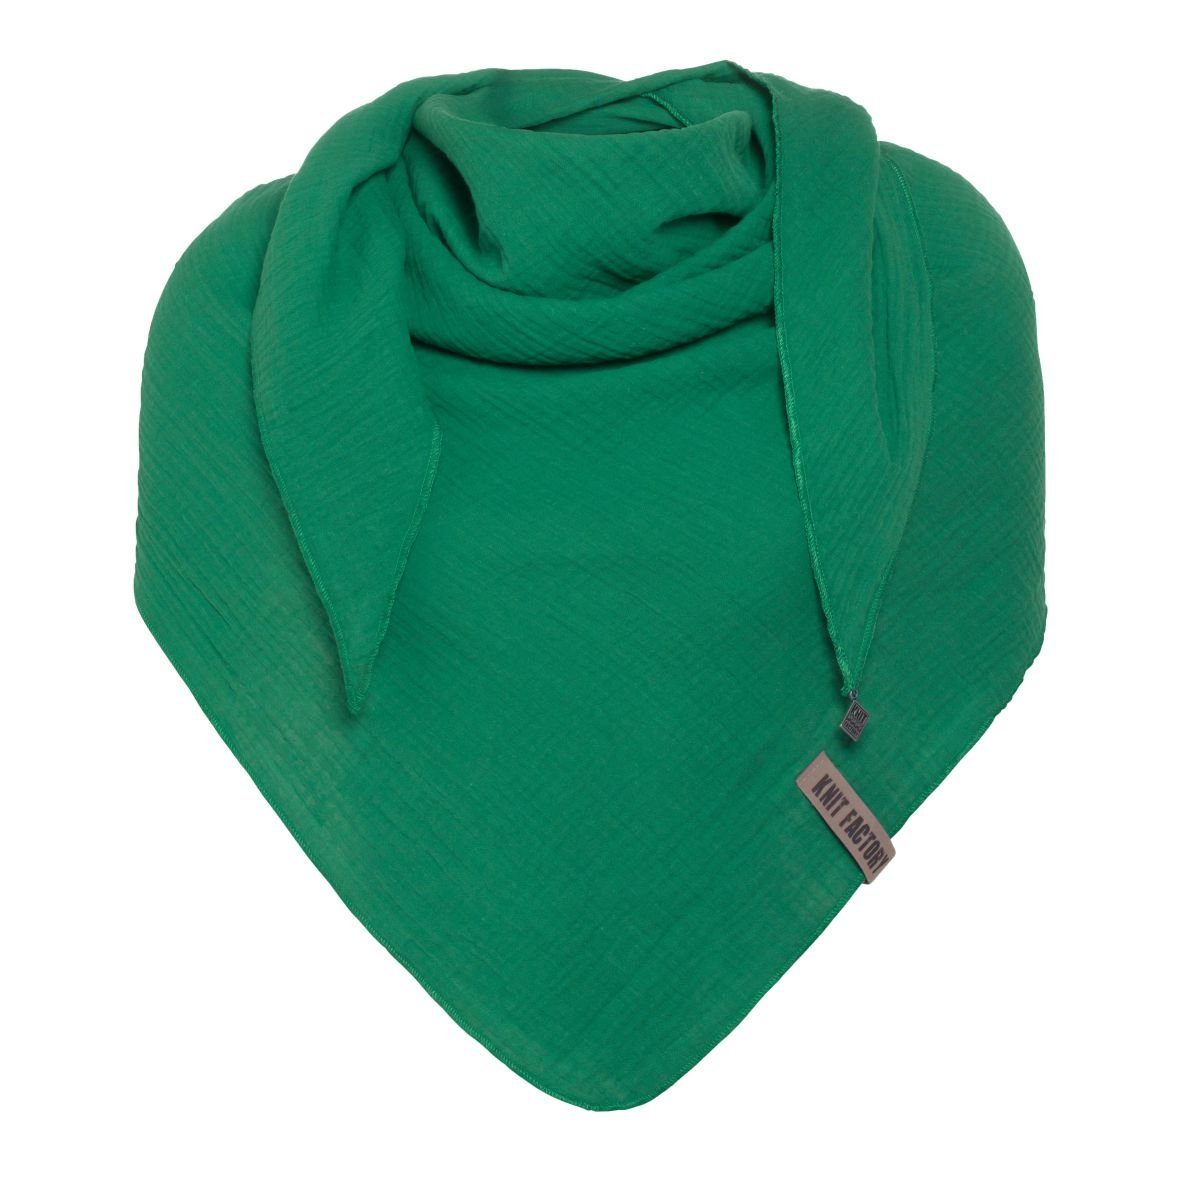 Modeschal Bright Green Damen Knit Factory Dreiecktuch, Liv Bandana, Factory Knit Dreieckschal,